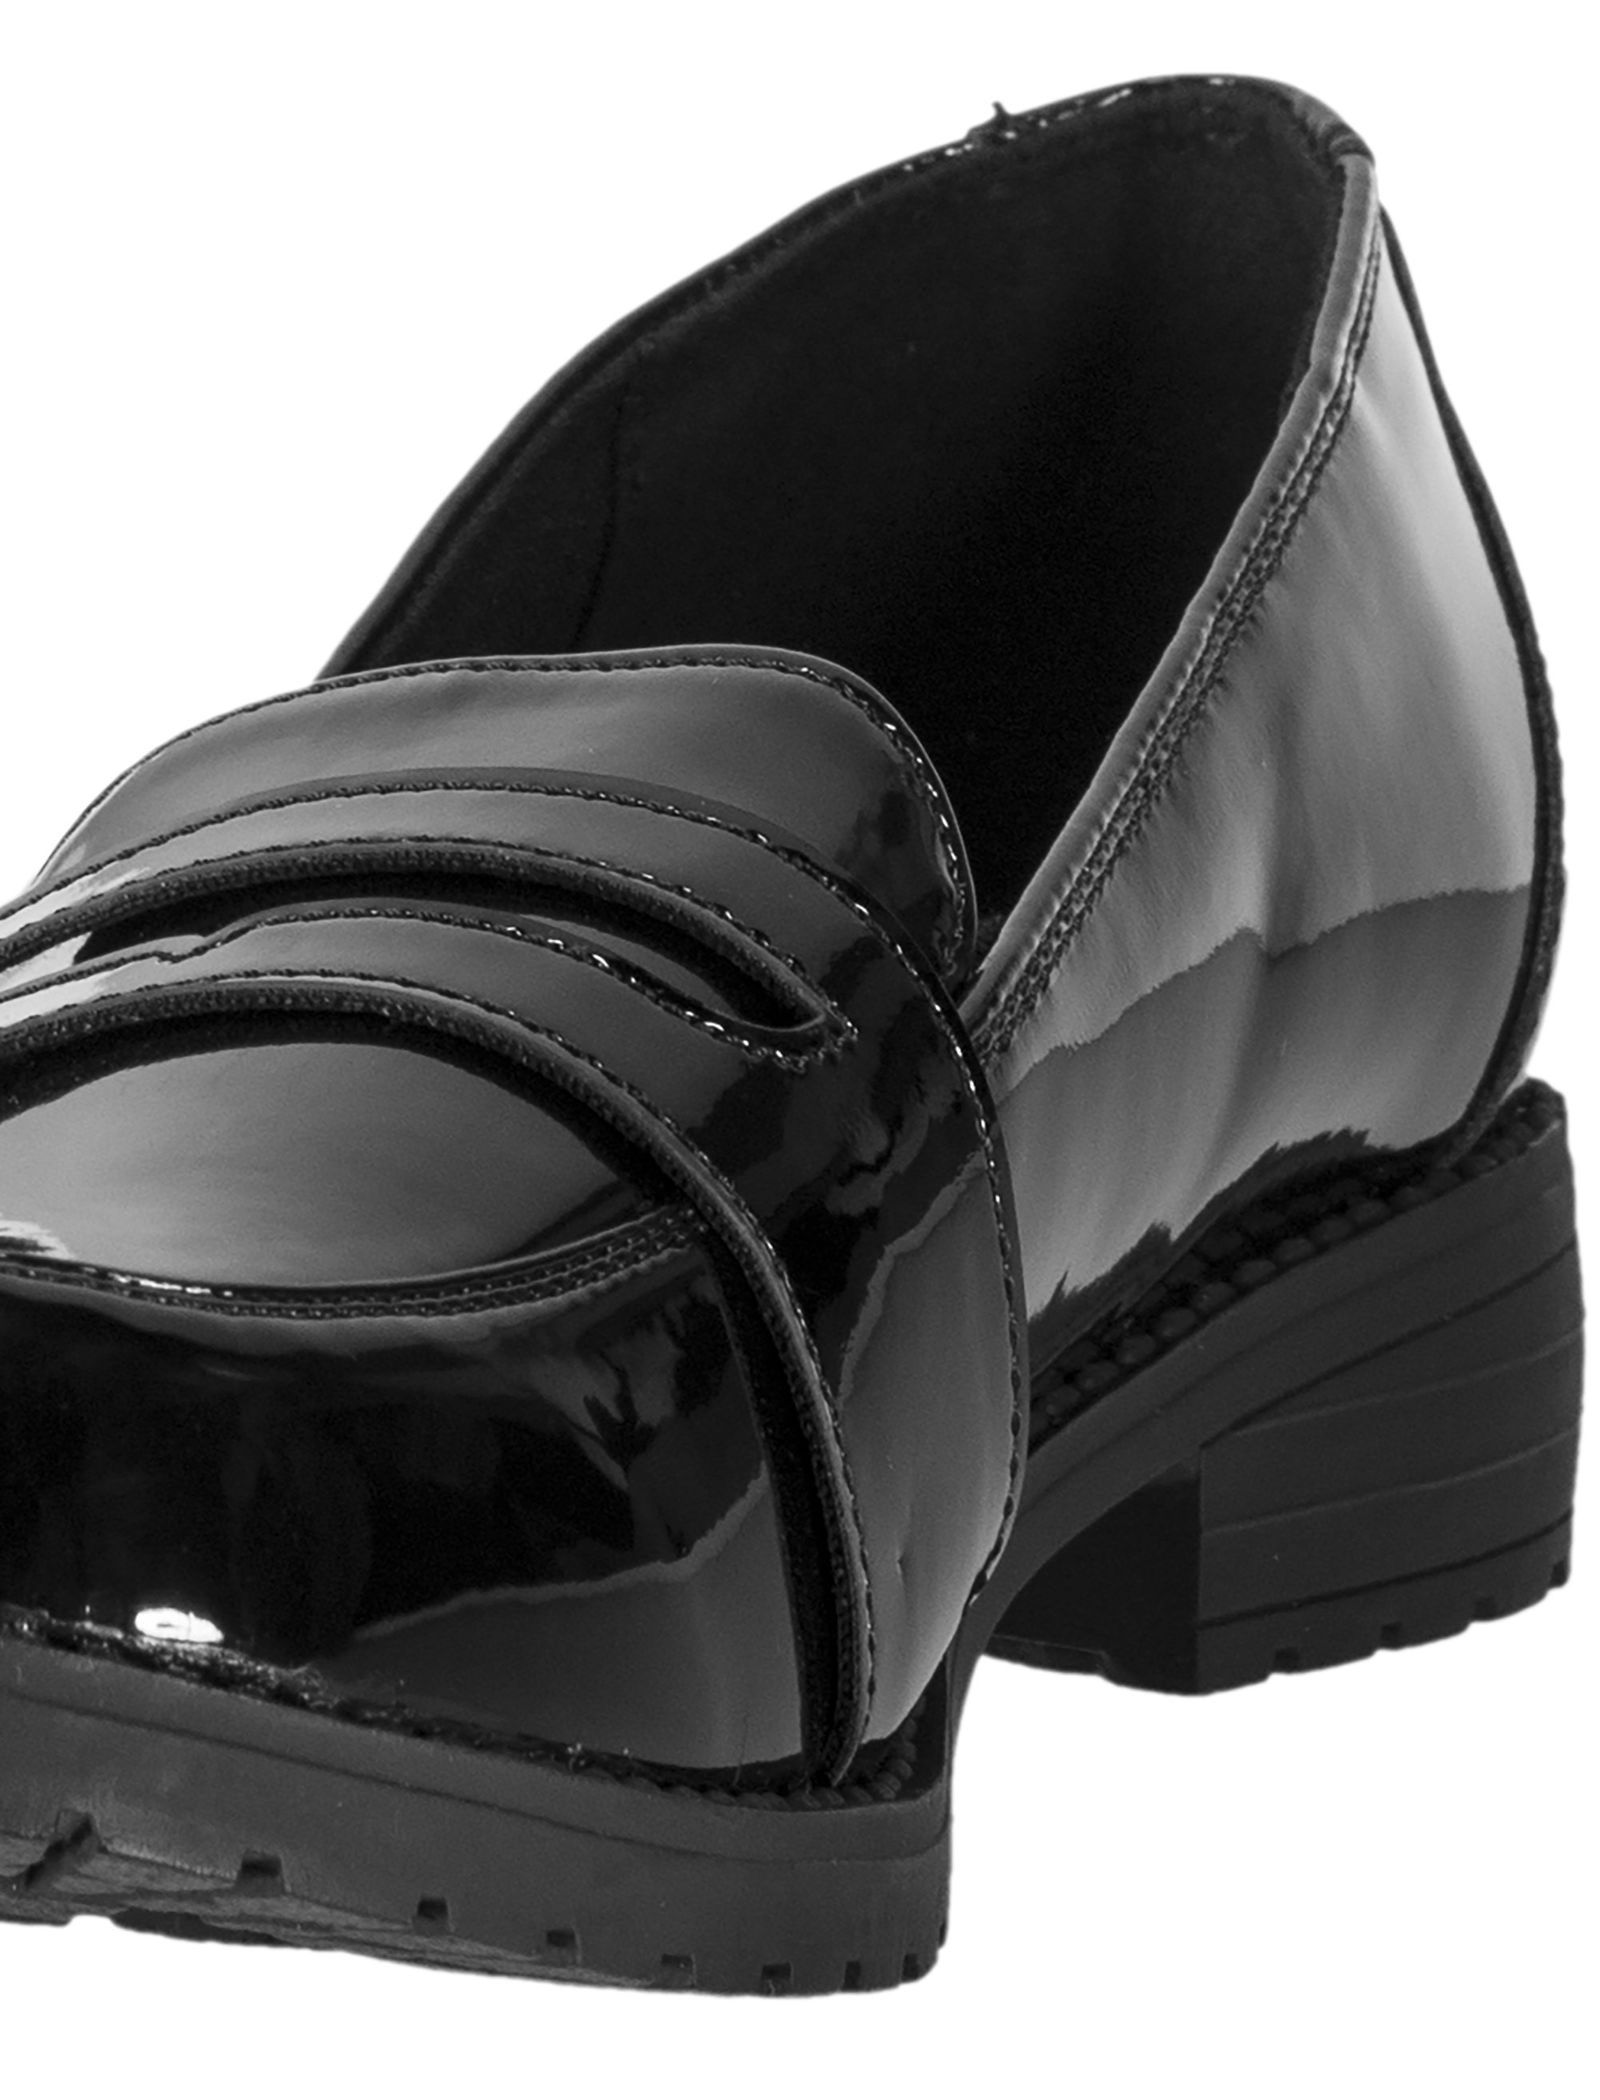 کفش مهمانی دخترانه - دبنهامز - مشکي - 11